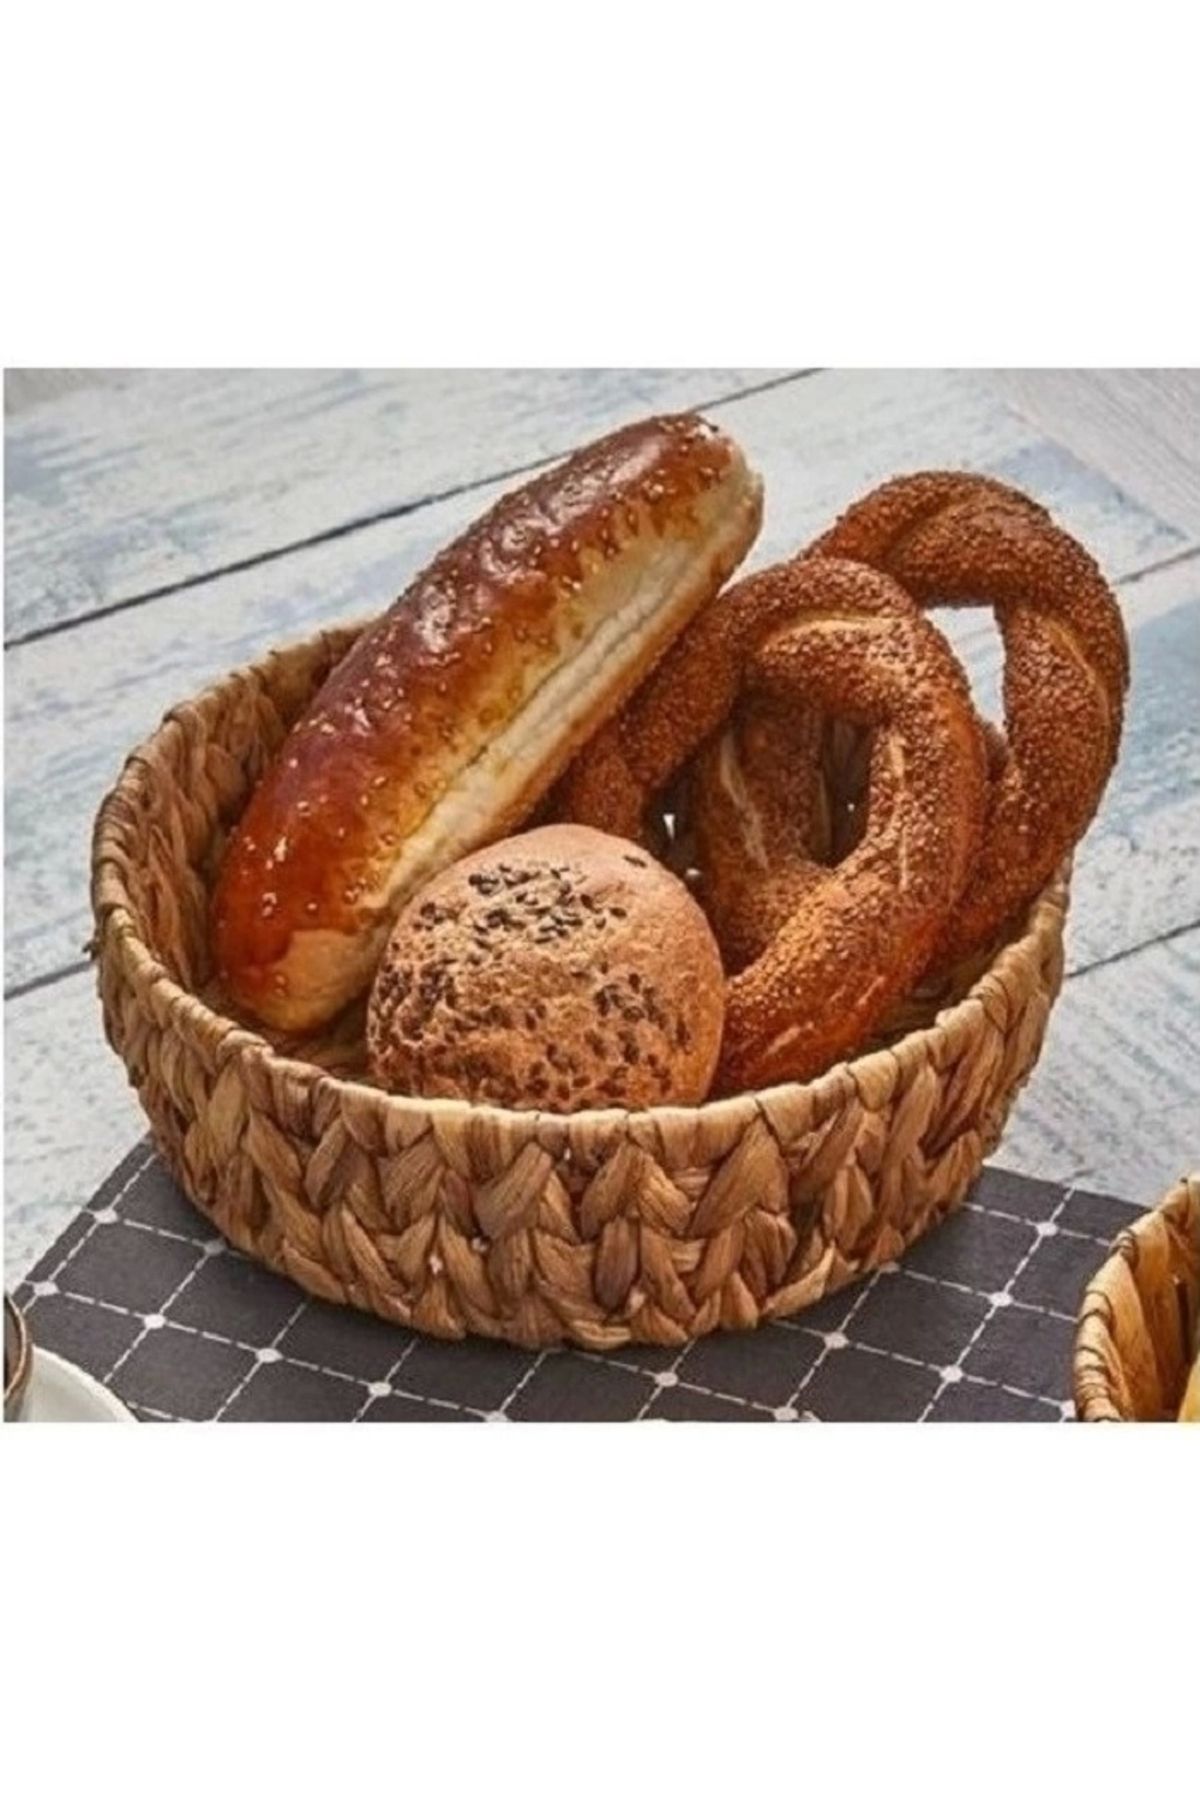 Evistro Yuvarlak Bombeli Hasır Ekmek ve Meyve Sepeti Düzenleyici 22 x 18 cm